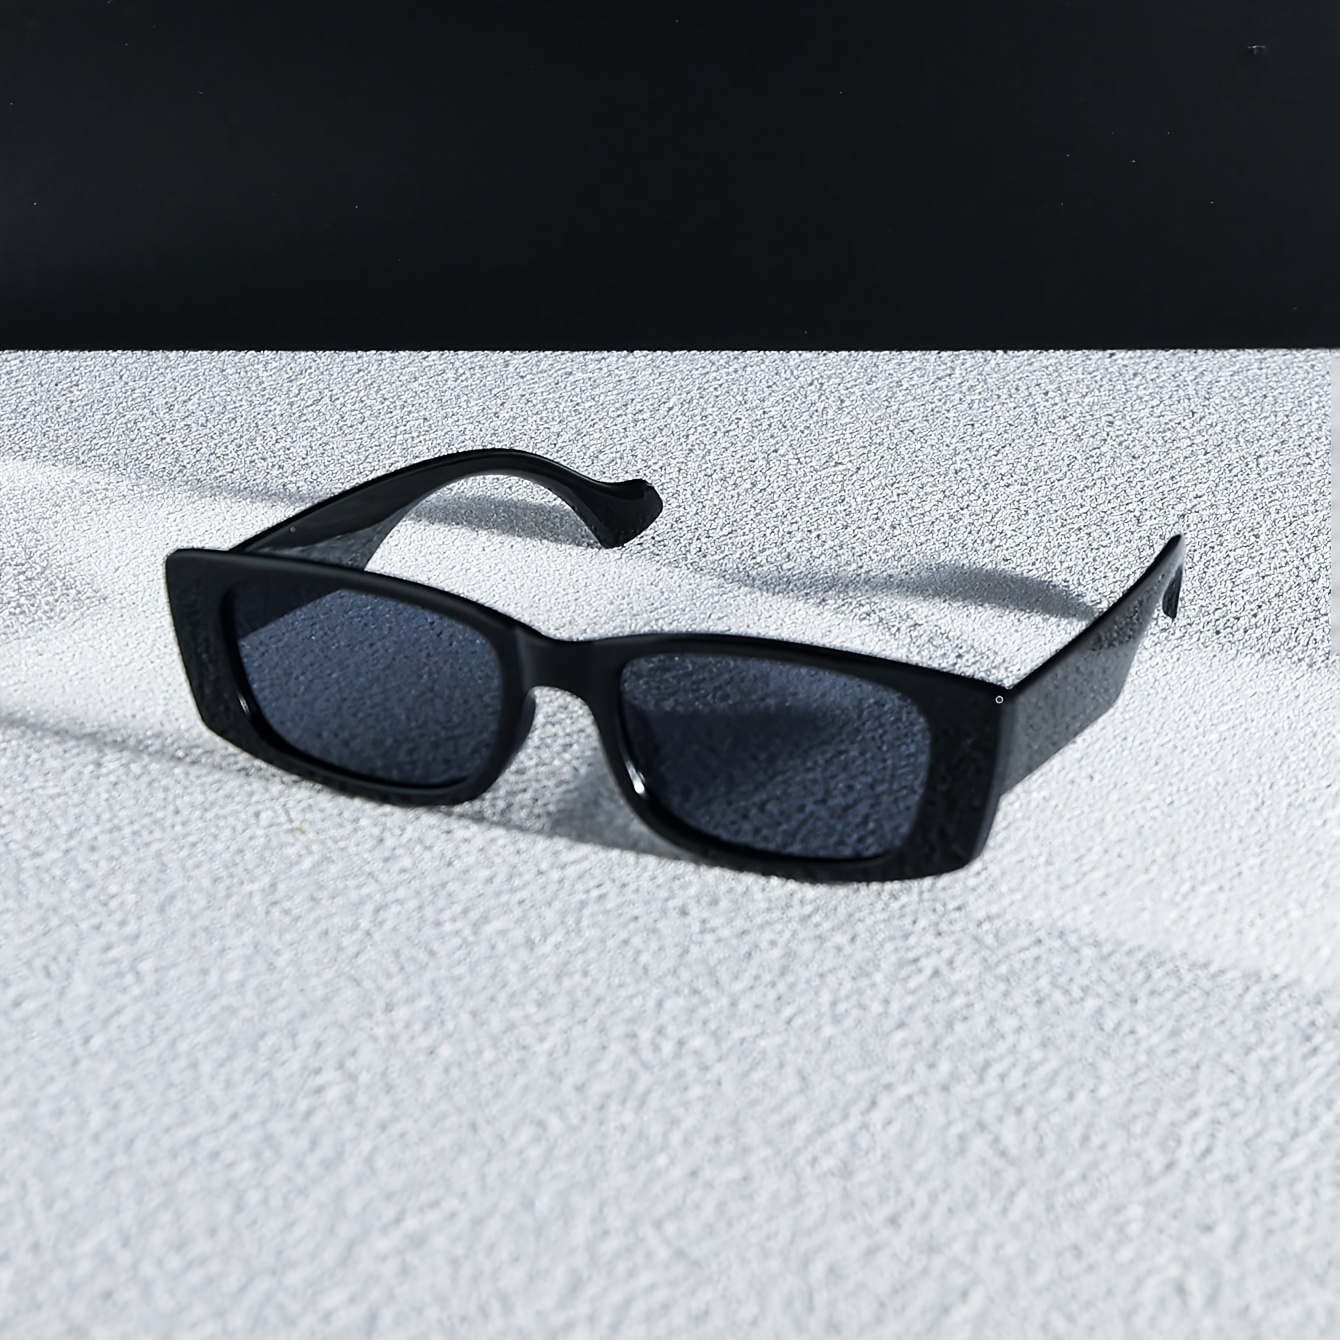 

White & Black Retro Rectangular Fashion Glasses Stylish Minimalist Fashion Glasses